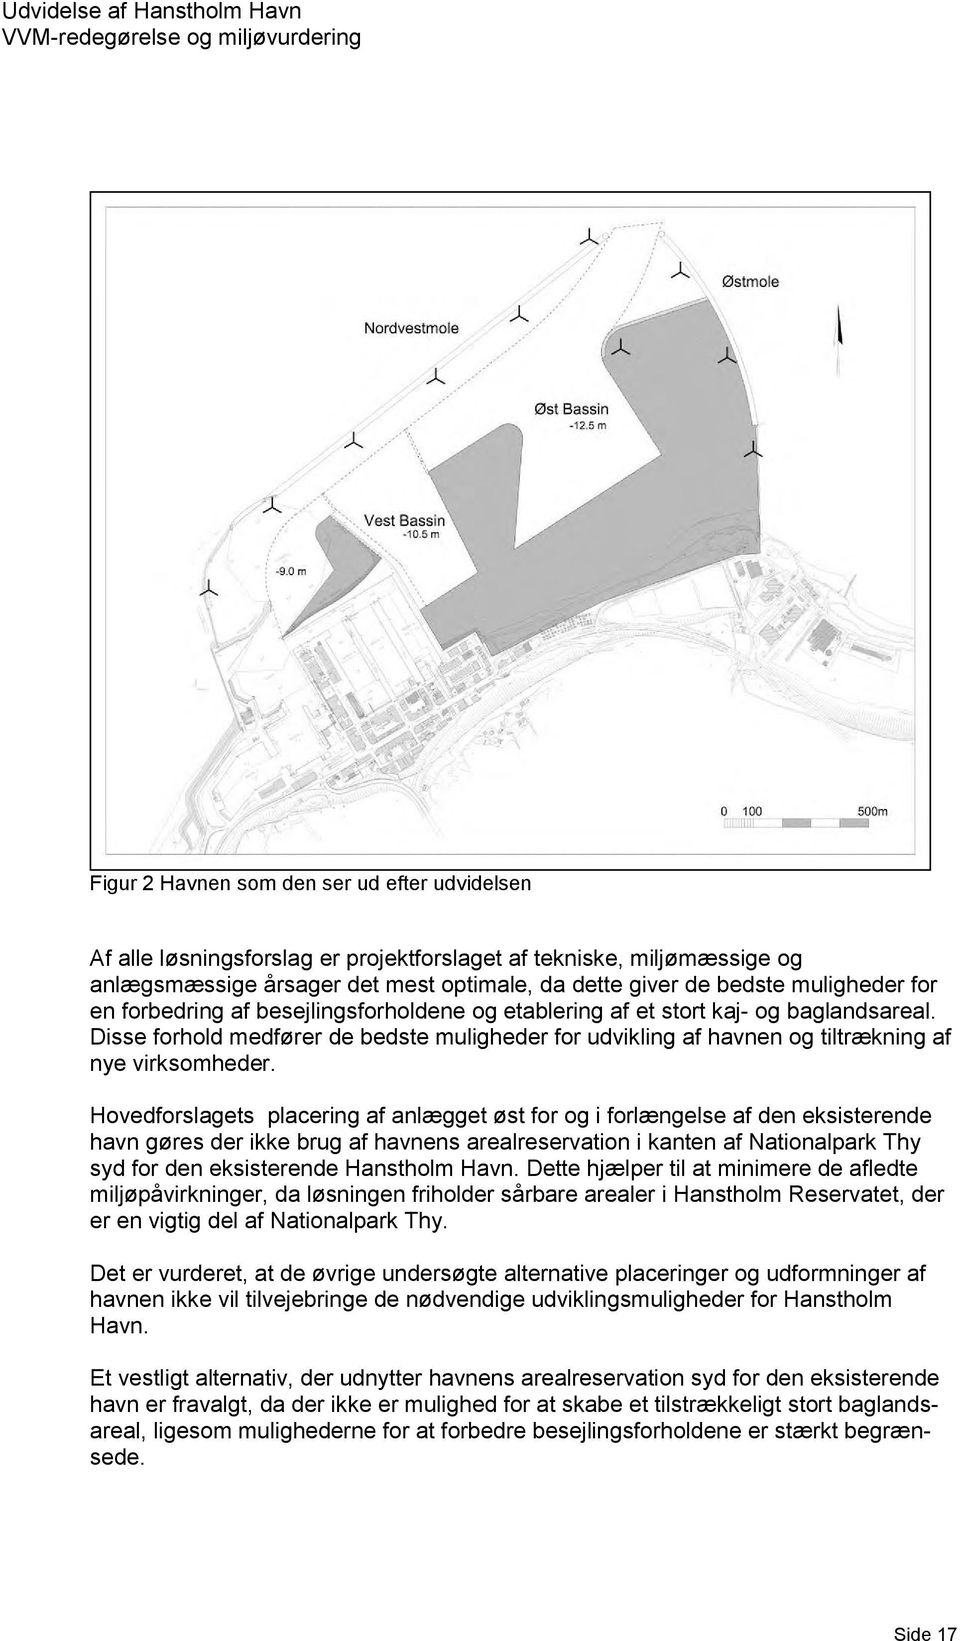 Hovedforslagets placering af anlægget øst for og i forlængelse af den eksisterende havn gøres der ikke brug af havnens arealreservation i kanten af Nationalpark Thy syd for den eksisterende Hanstholm